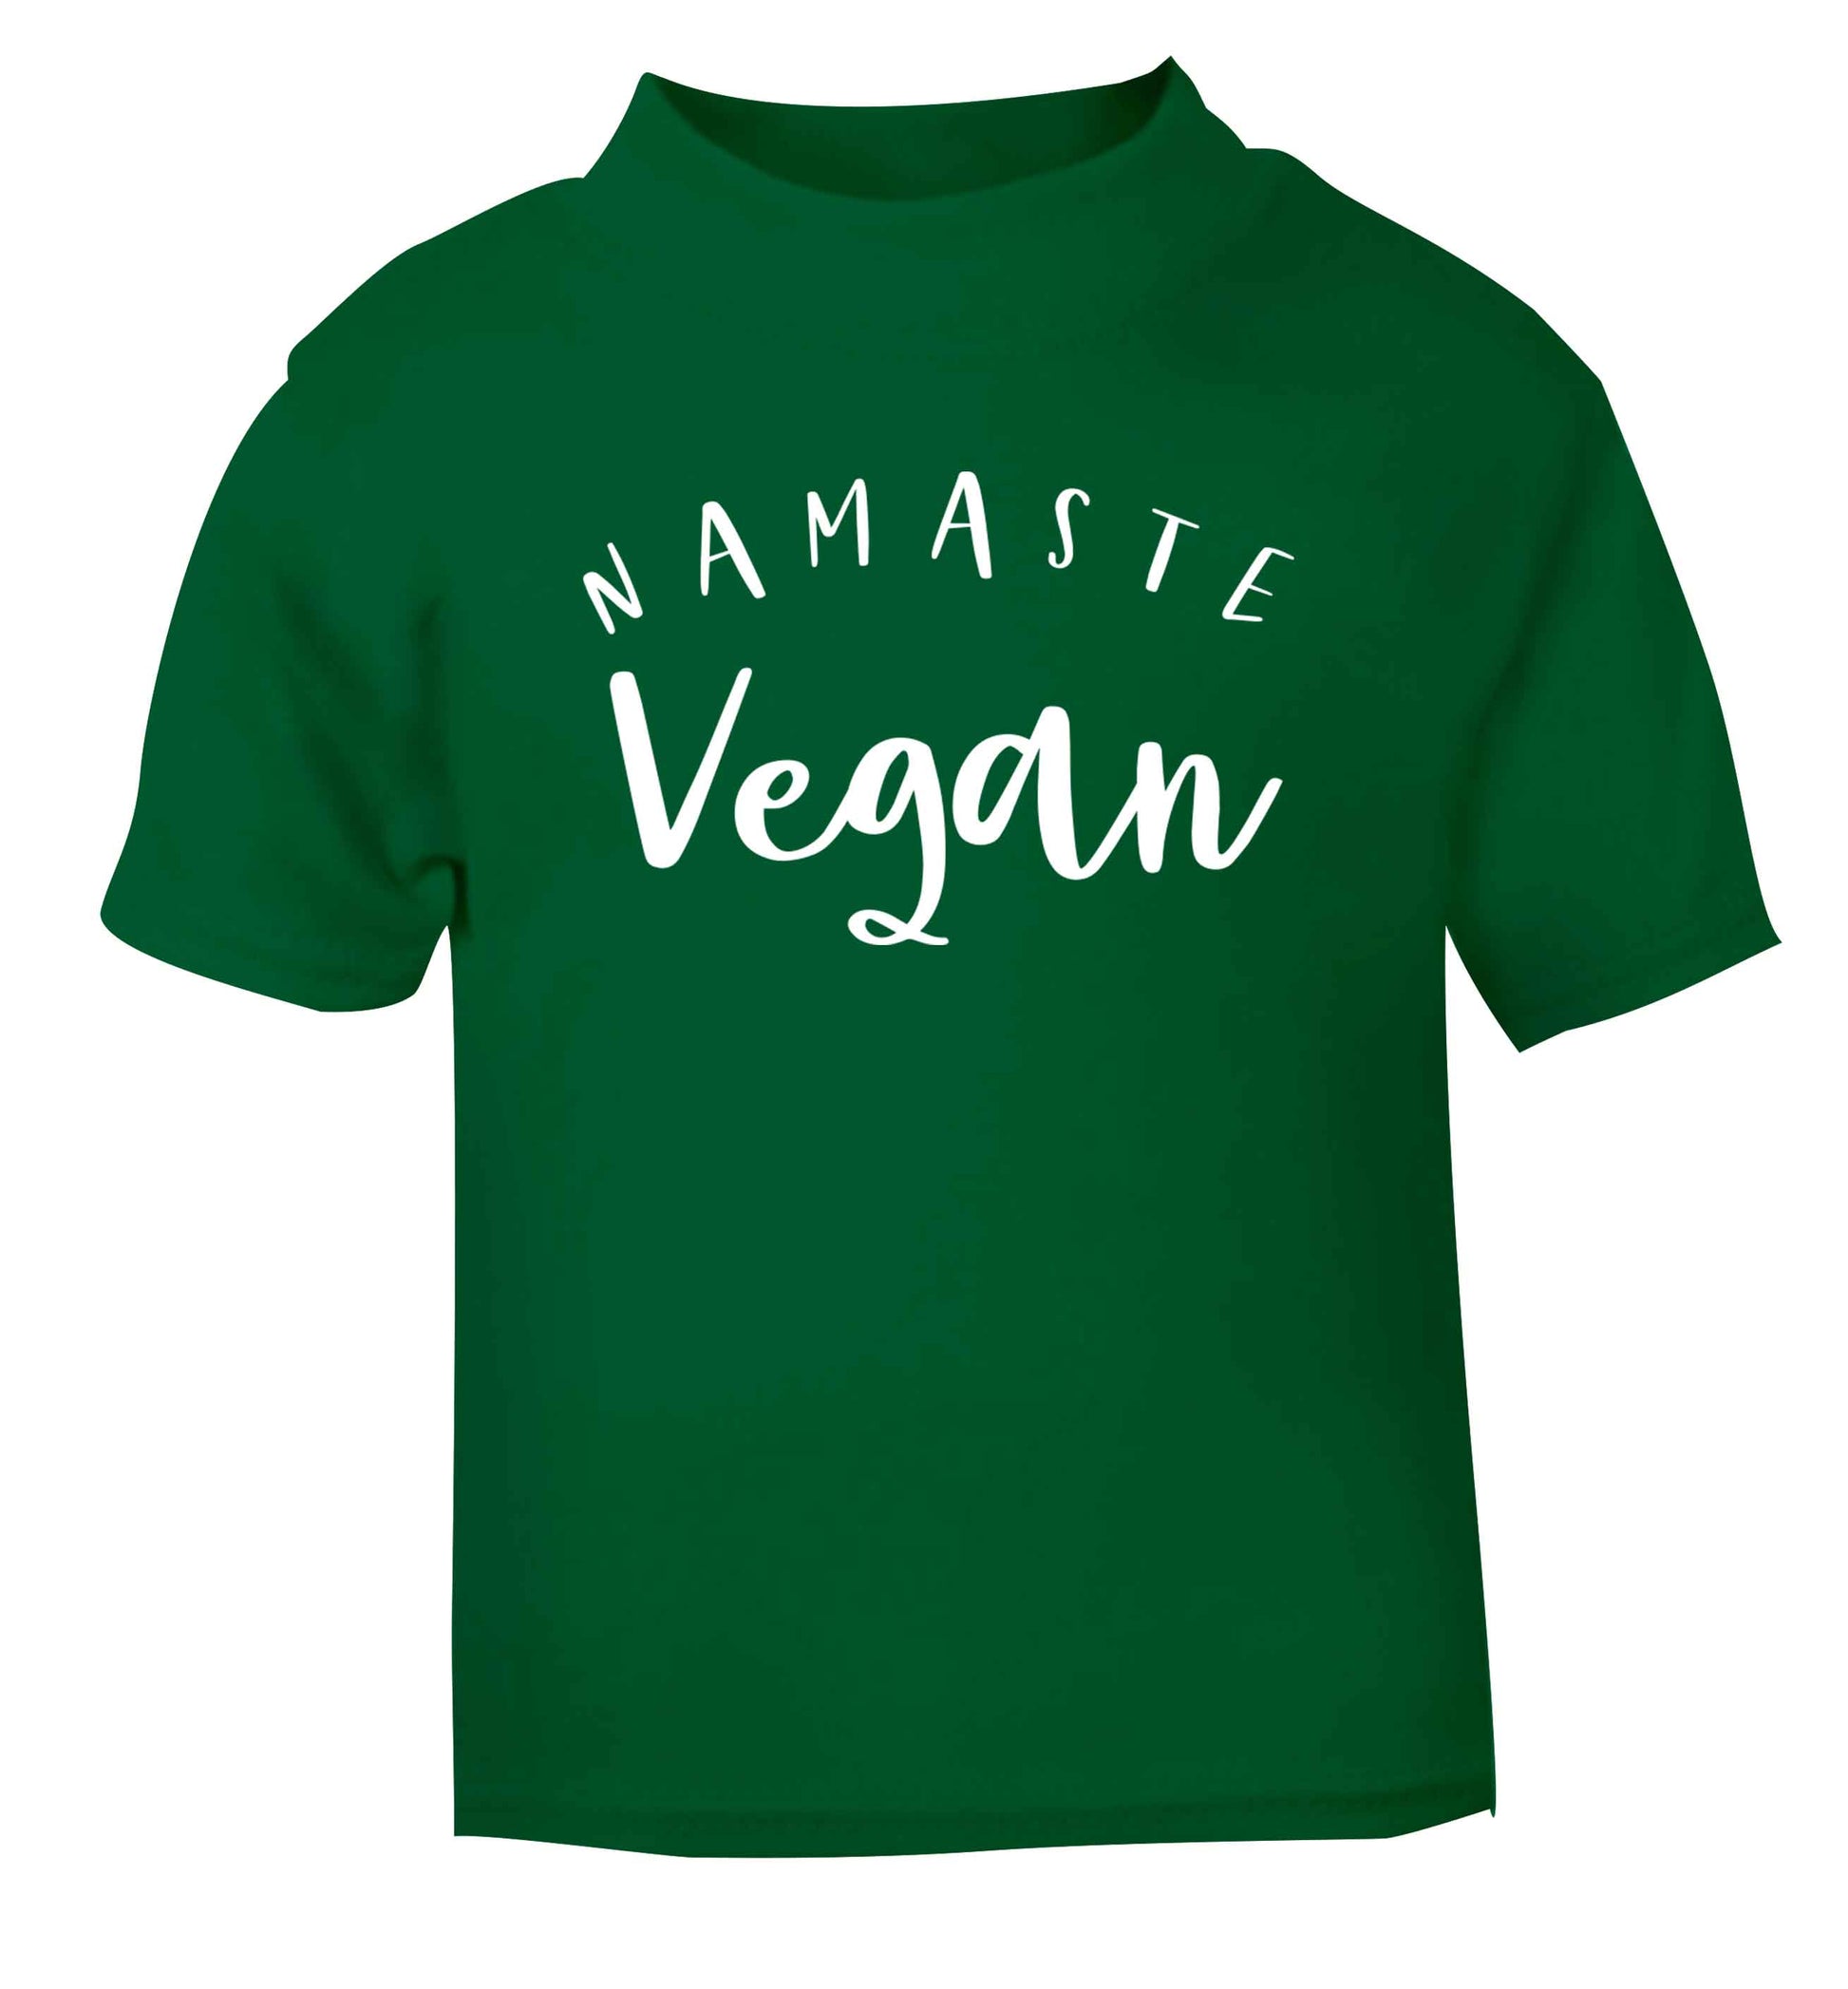 Namaste vegan green Baby Toddler Tshirt 2 Years